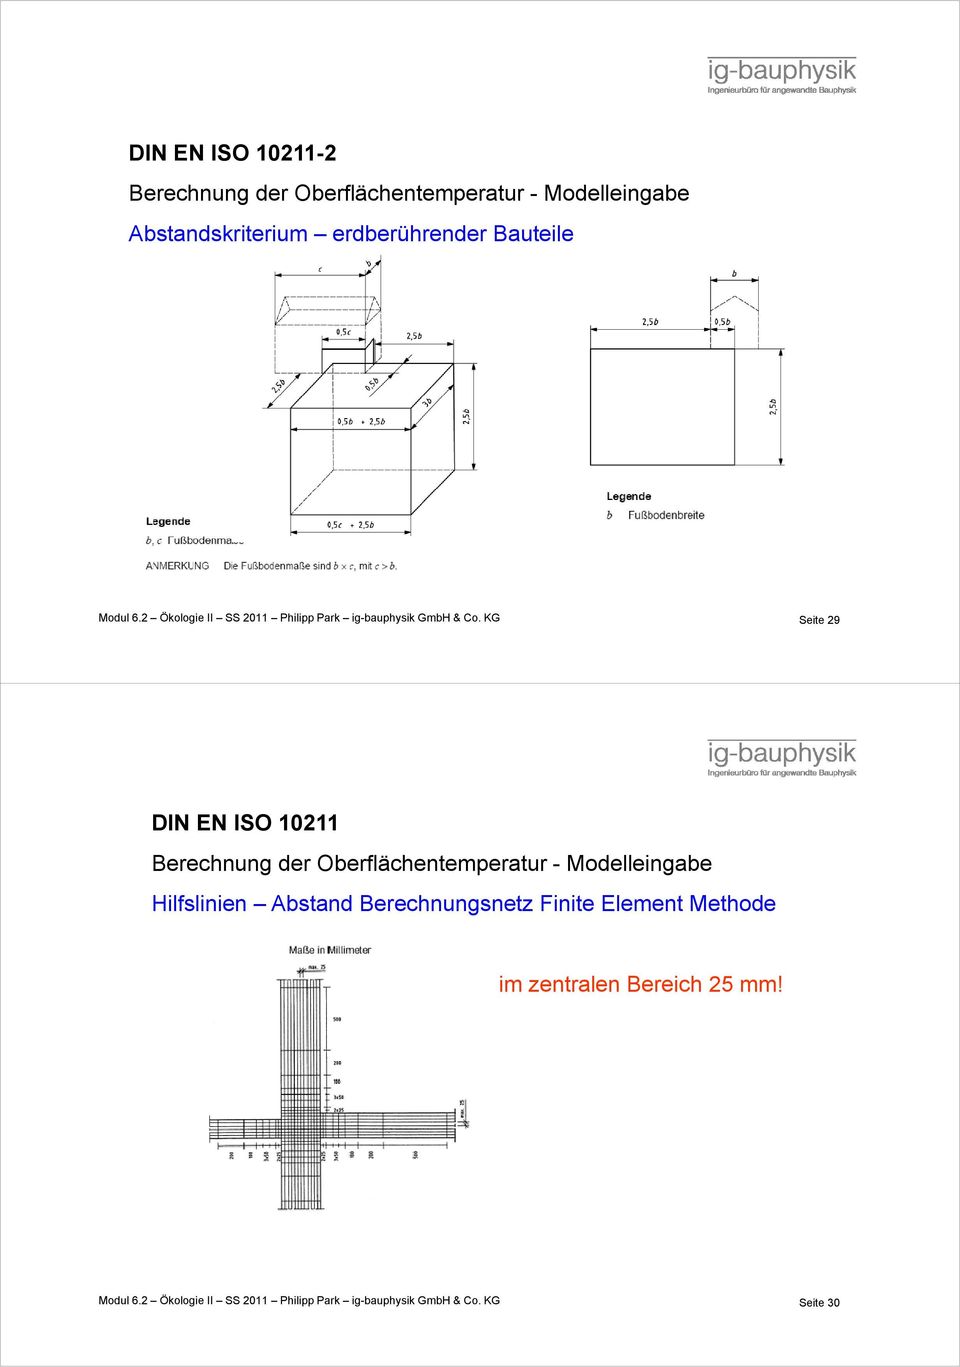 KG Seite 29 DIN EN ISO 10211 Berechnung der Oberflächentemperatur - Modelleingabe Hilfslinien Abstand